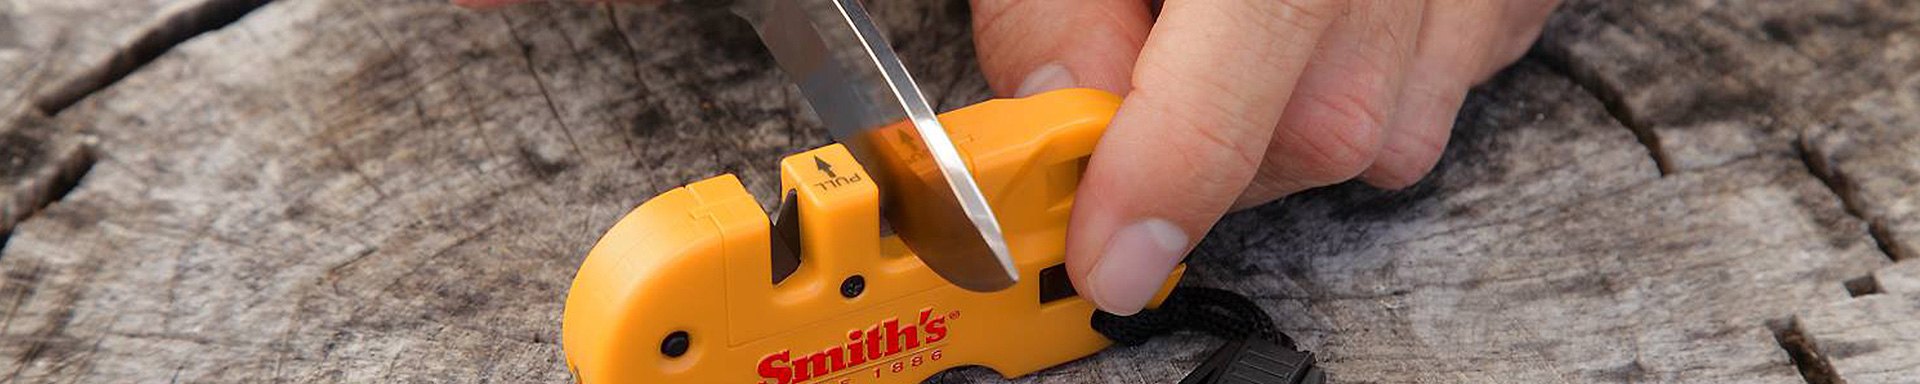 Smith's Knives